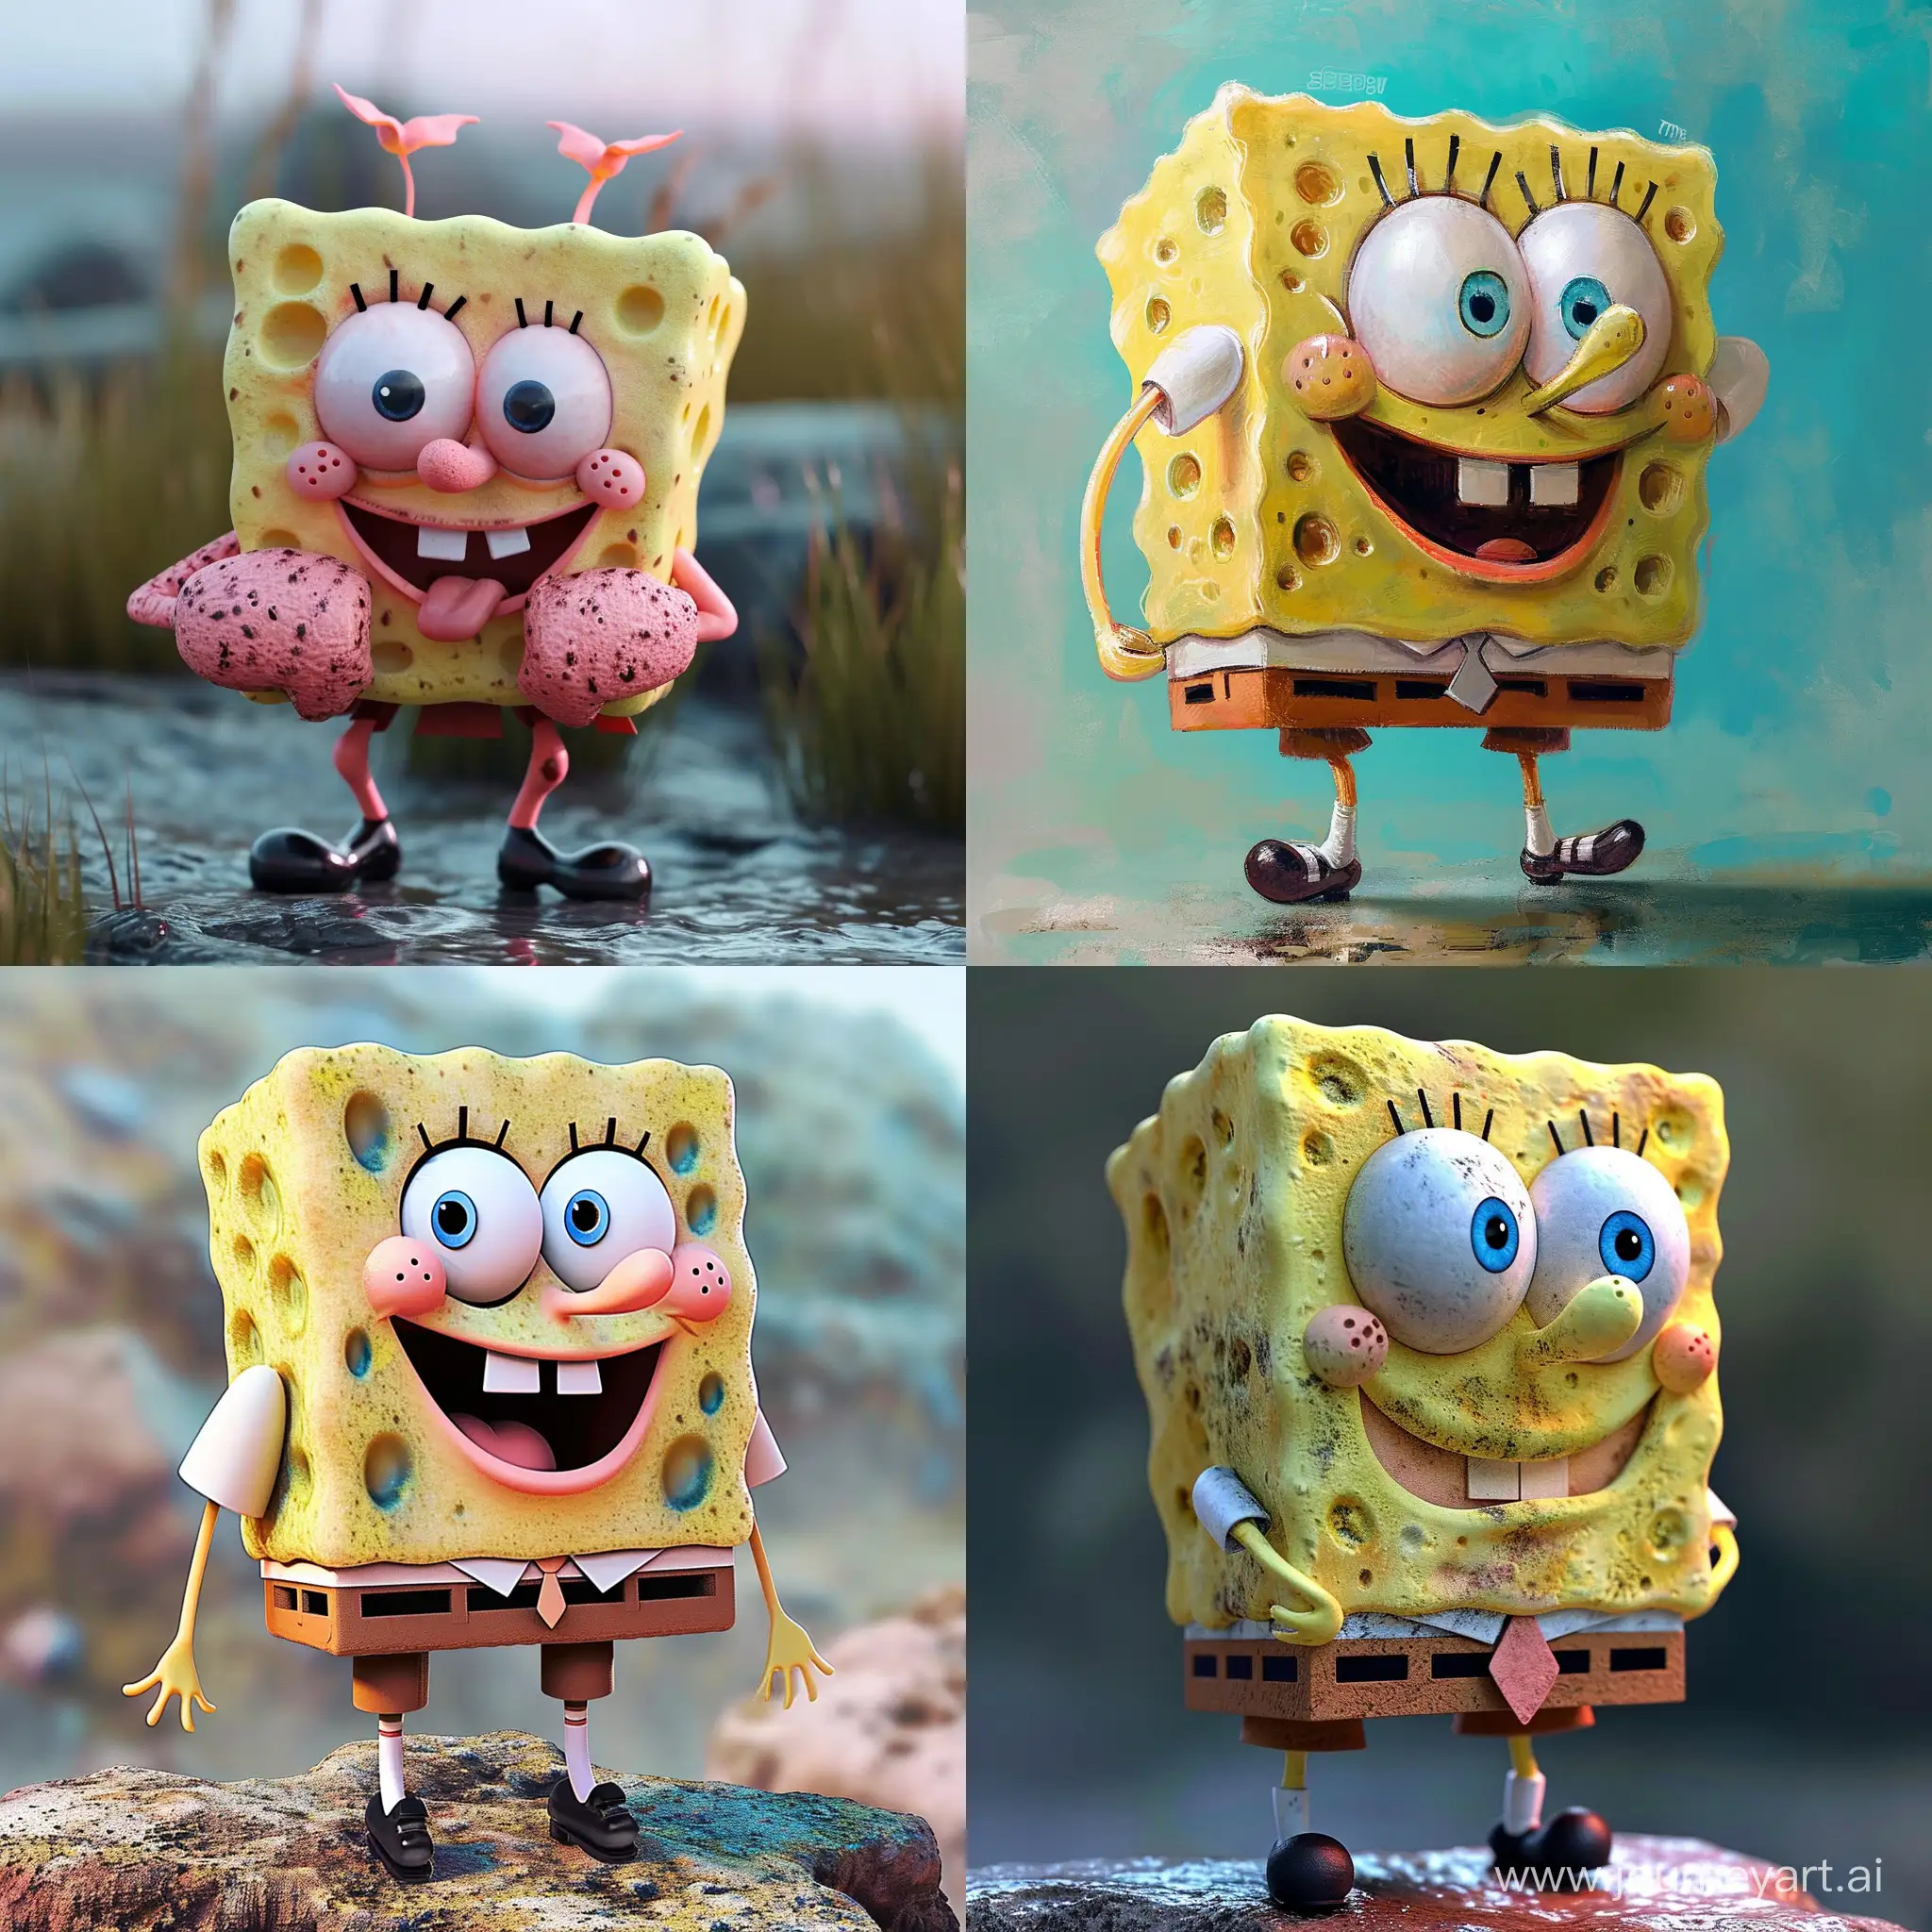 Patrick-from-SpongeBob-SquarePants-in-Vibrant-Artistic-Rendering